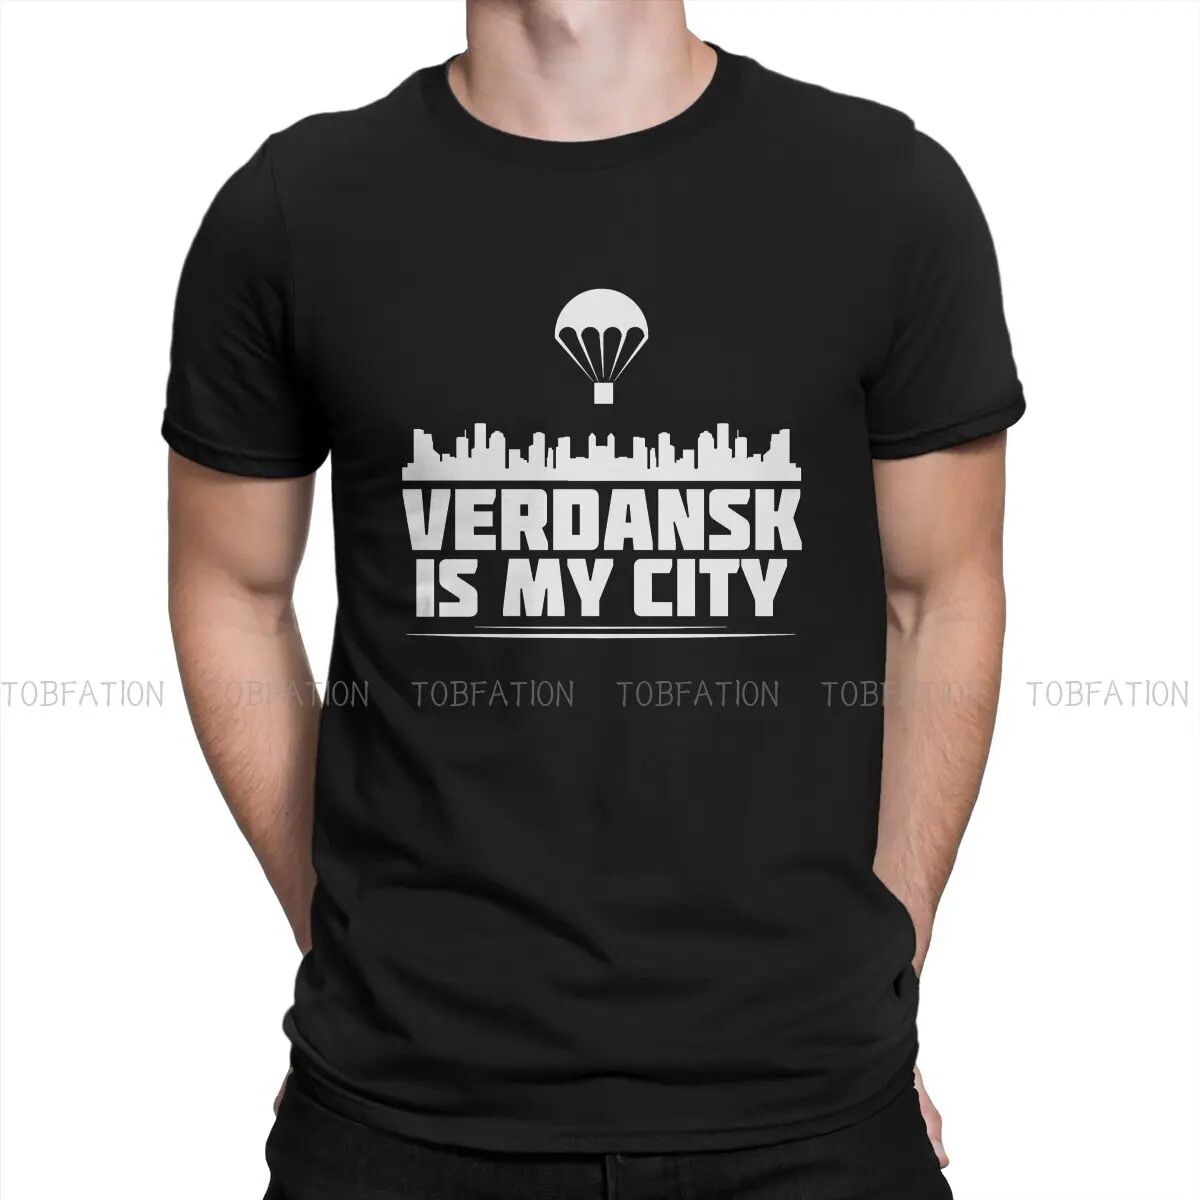 

Черная треска, Ops, холодная война, полиэстер, футболки верданск-мой город, Классическая отличительная Мужская футболка, забавная одежда 6XL